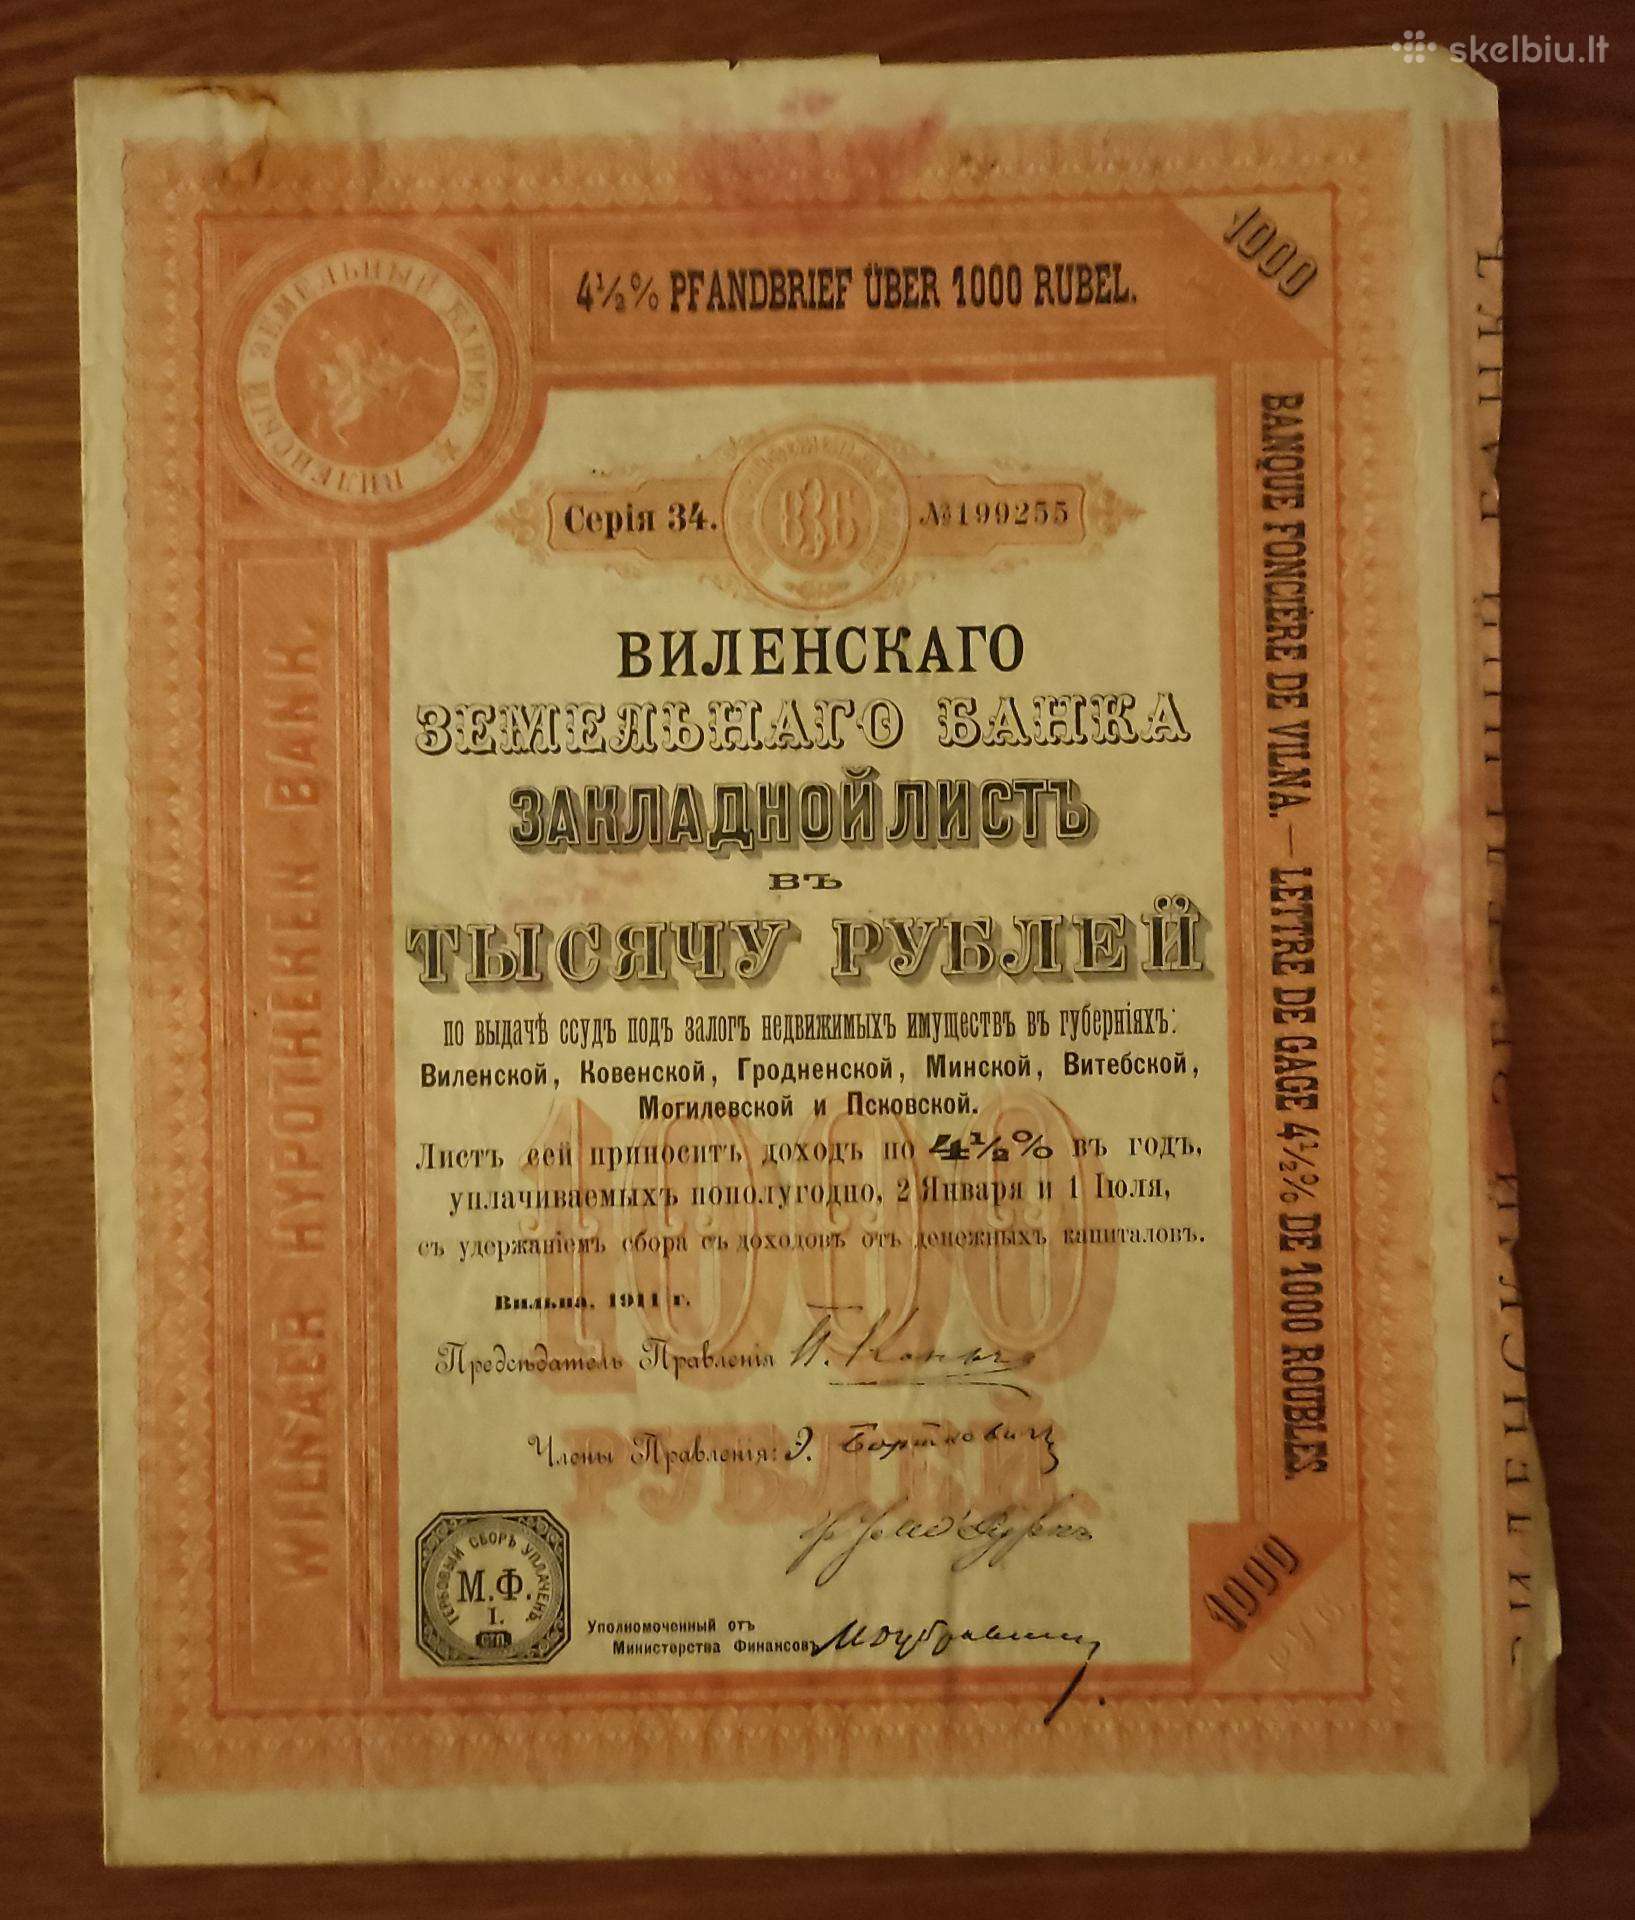 Repellent float private 1000 rublių Vilniaus Žėmės Ūkio Bankas 1911 m. - Skelbiu.lt